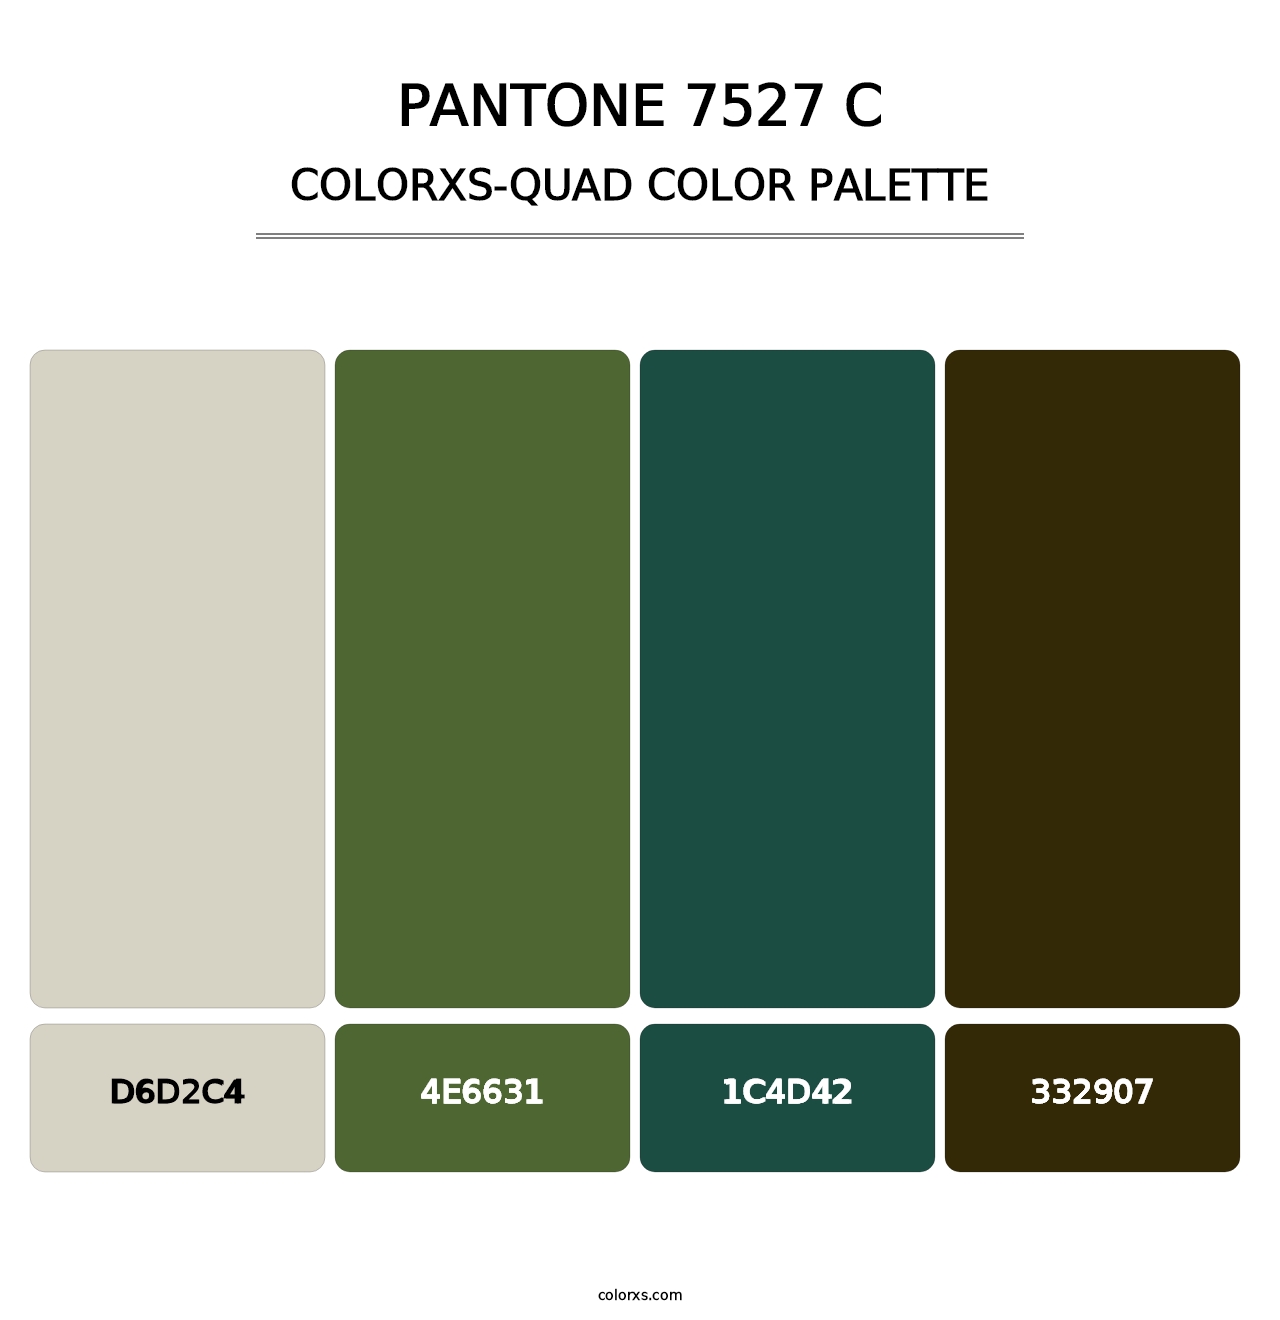 PANTONE 7527 C - Colorxs Quad Palette